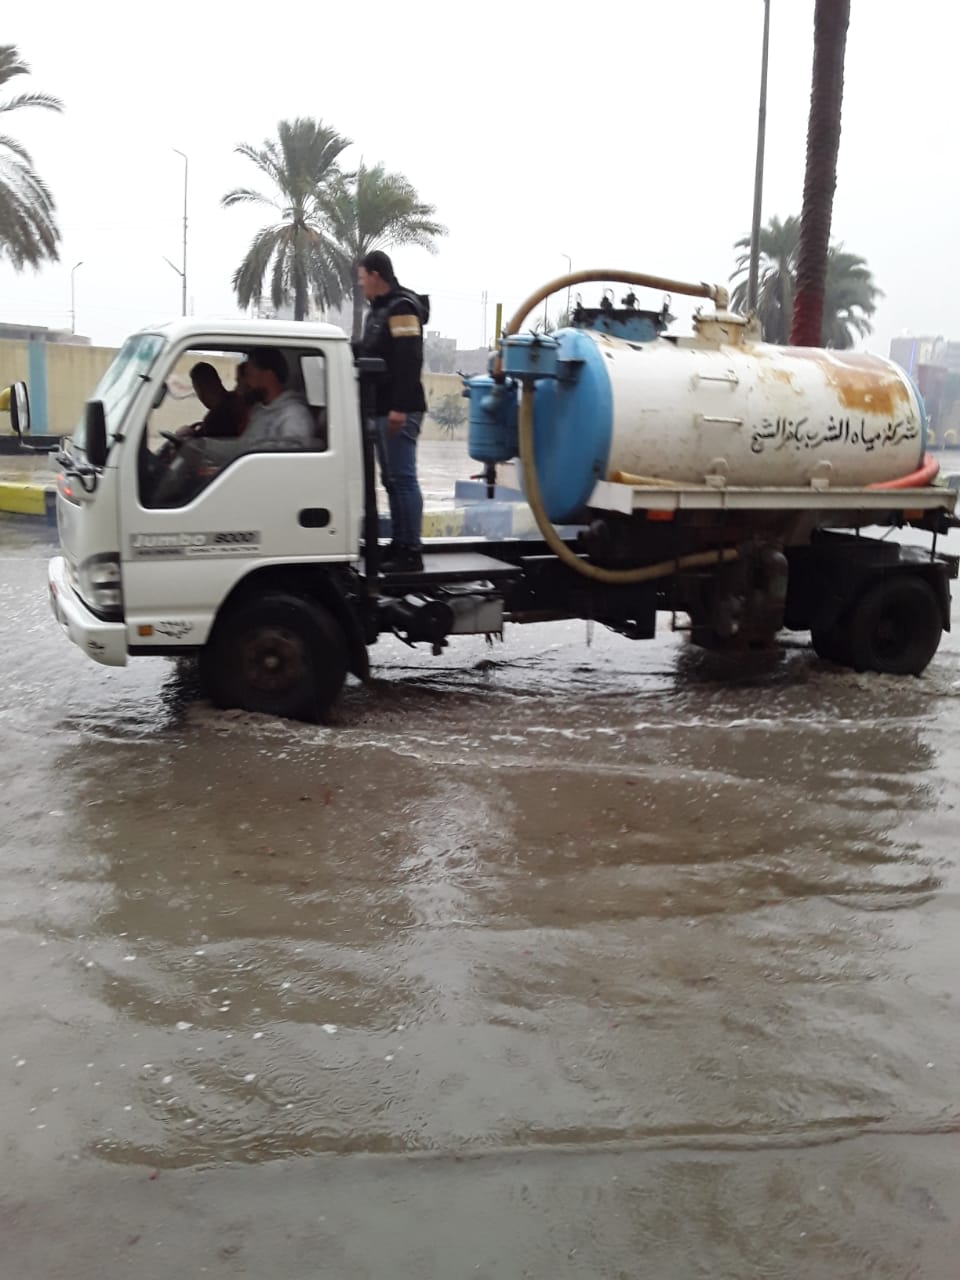 دفع سيارات شفط إضافية بكفر الشيخ والإسكندرية لسرعة إزالة مياه الأمطار (6)